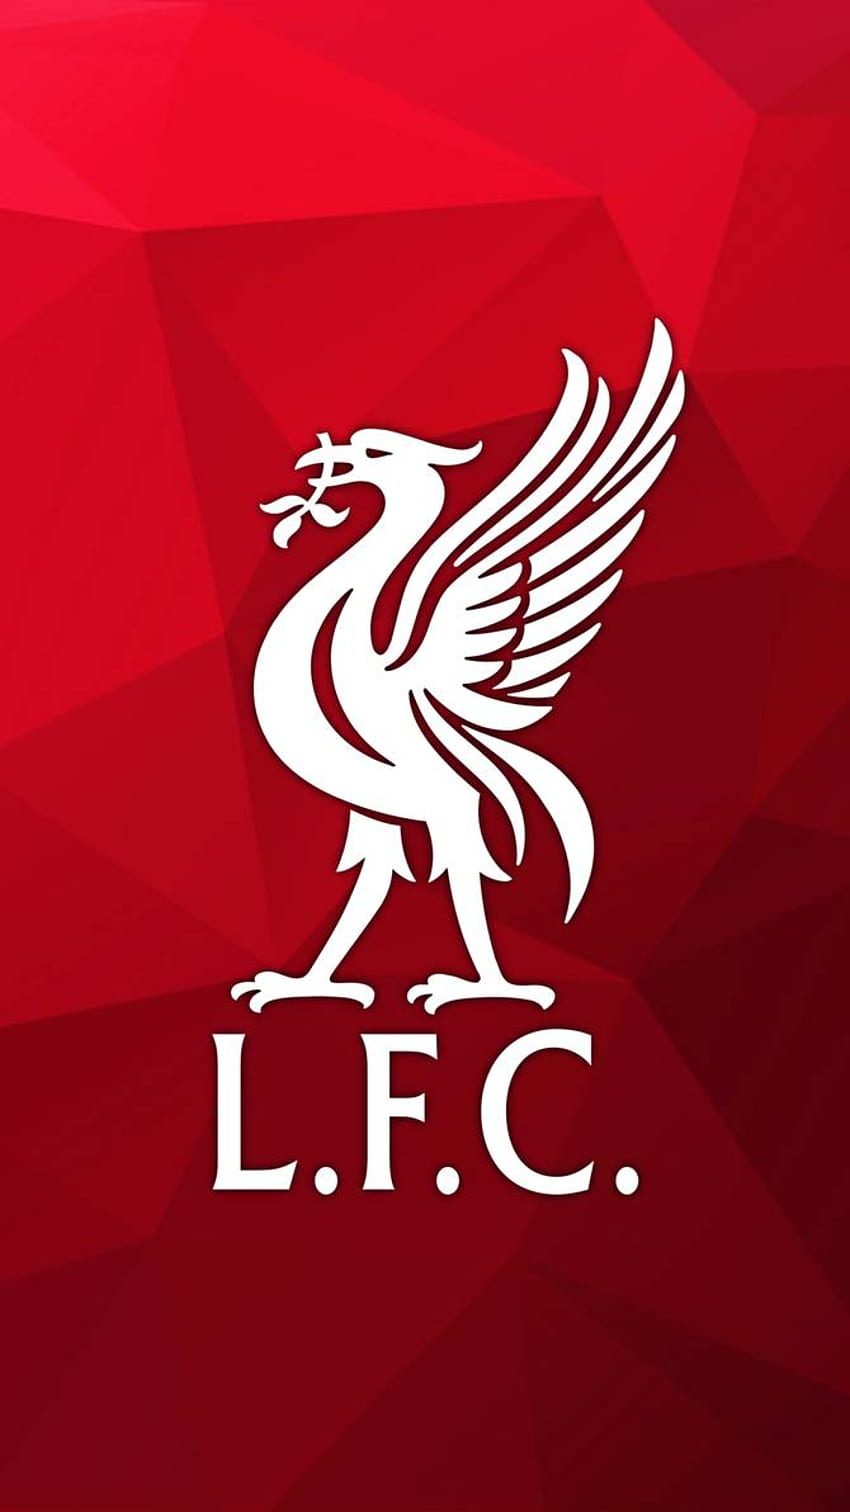 Logo Liverpool FC untuk ponsel iPhone dan Android - Liverpool Core, Bird Logo wallpaper ponsel HD